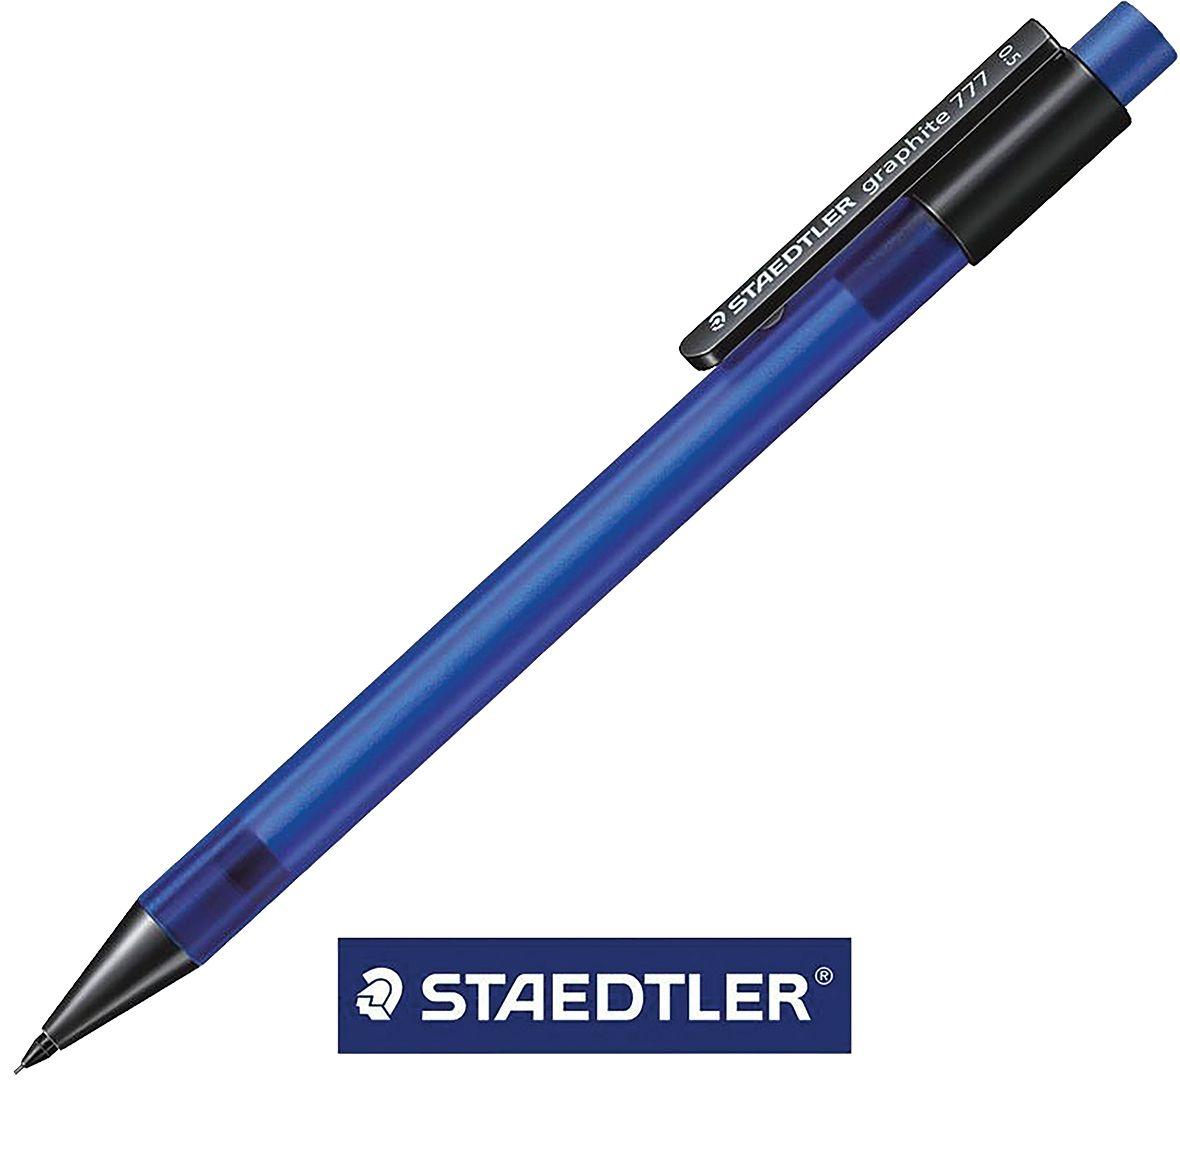 Selected image for STAEDTLER Tehnička olovka 0.5 777 plava